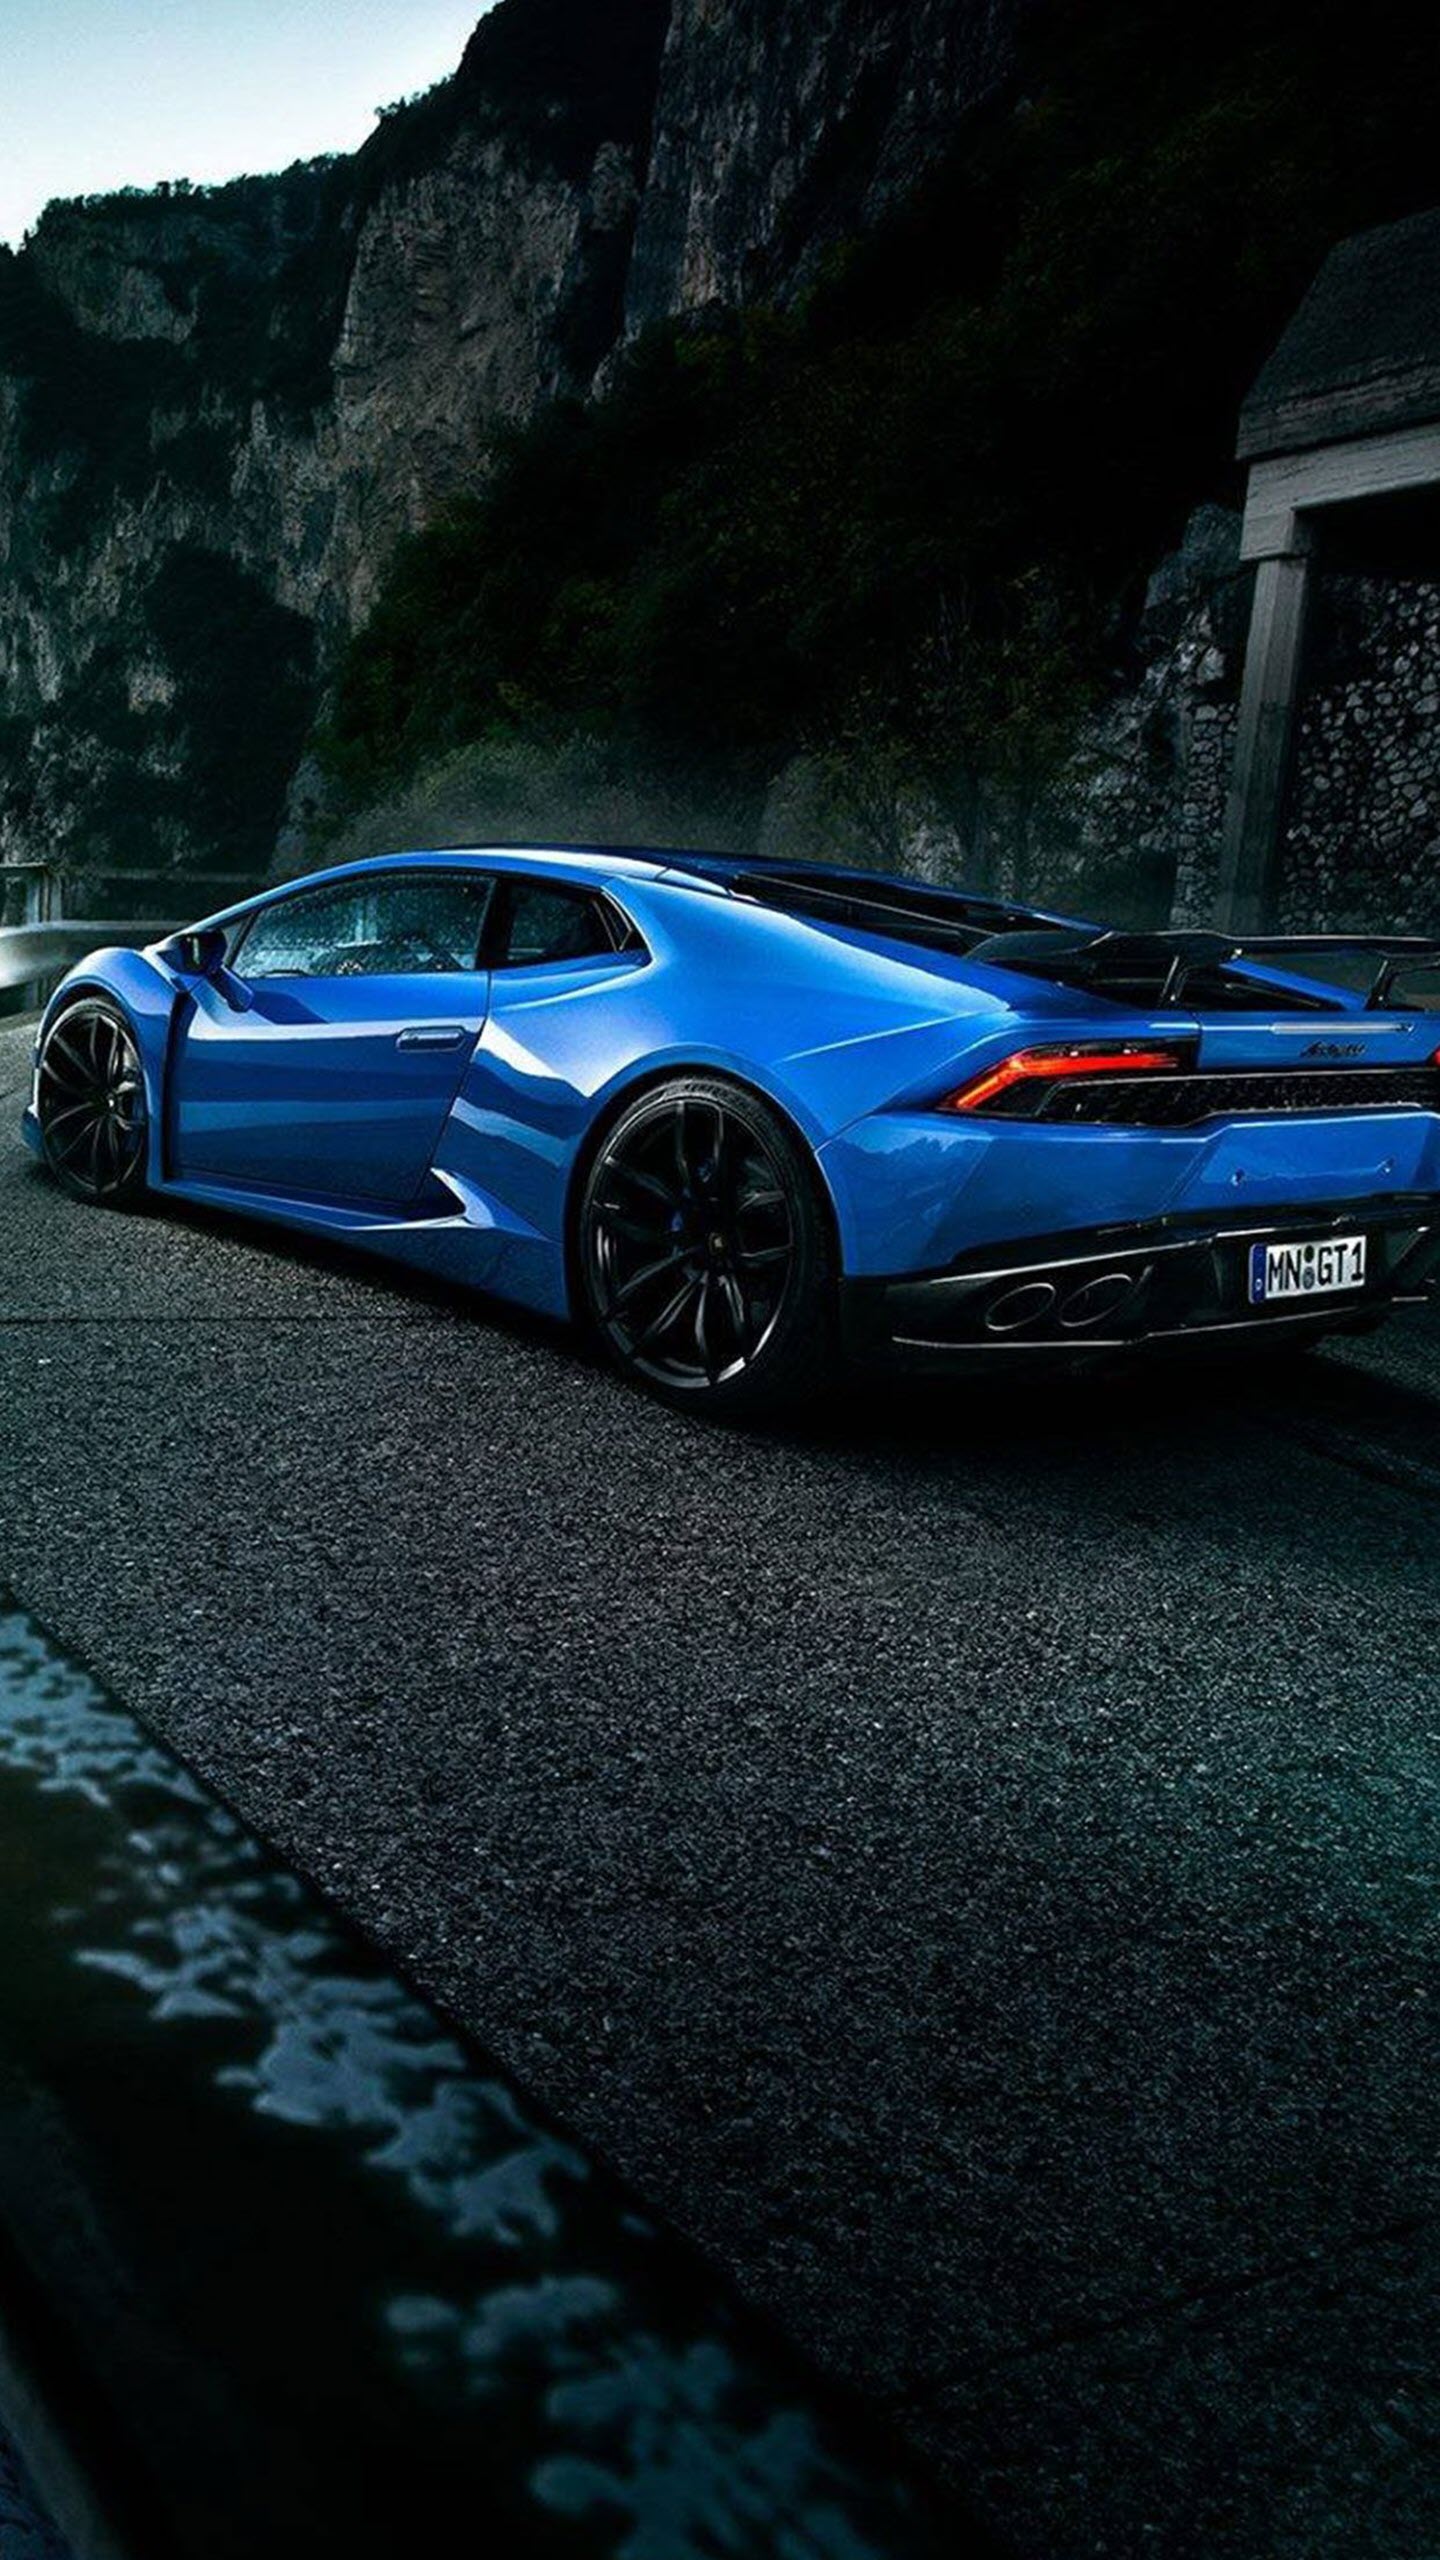 Lamborghini - ánh sáng mới của thế giới siêu xe và sự kết hợp tuyệt với giữa sự mạnh mẽ và sự đẳng cấp. Hãy dành một phút để chiêm ngưỡng những chiếc Lamborghini tỏa sáng và cảm nhận sự độc đáo và mê hoặc từ những kiểu dáng, chi tiết và công nghệ đẳng cấp.